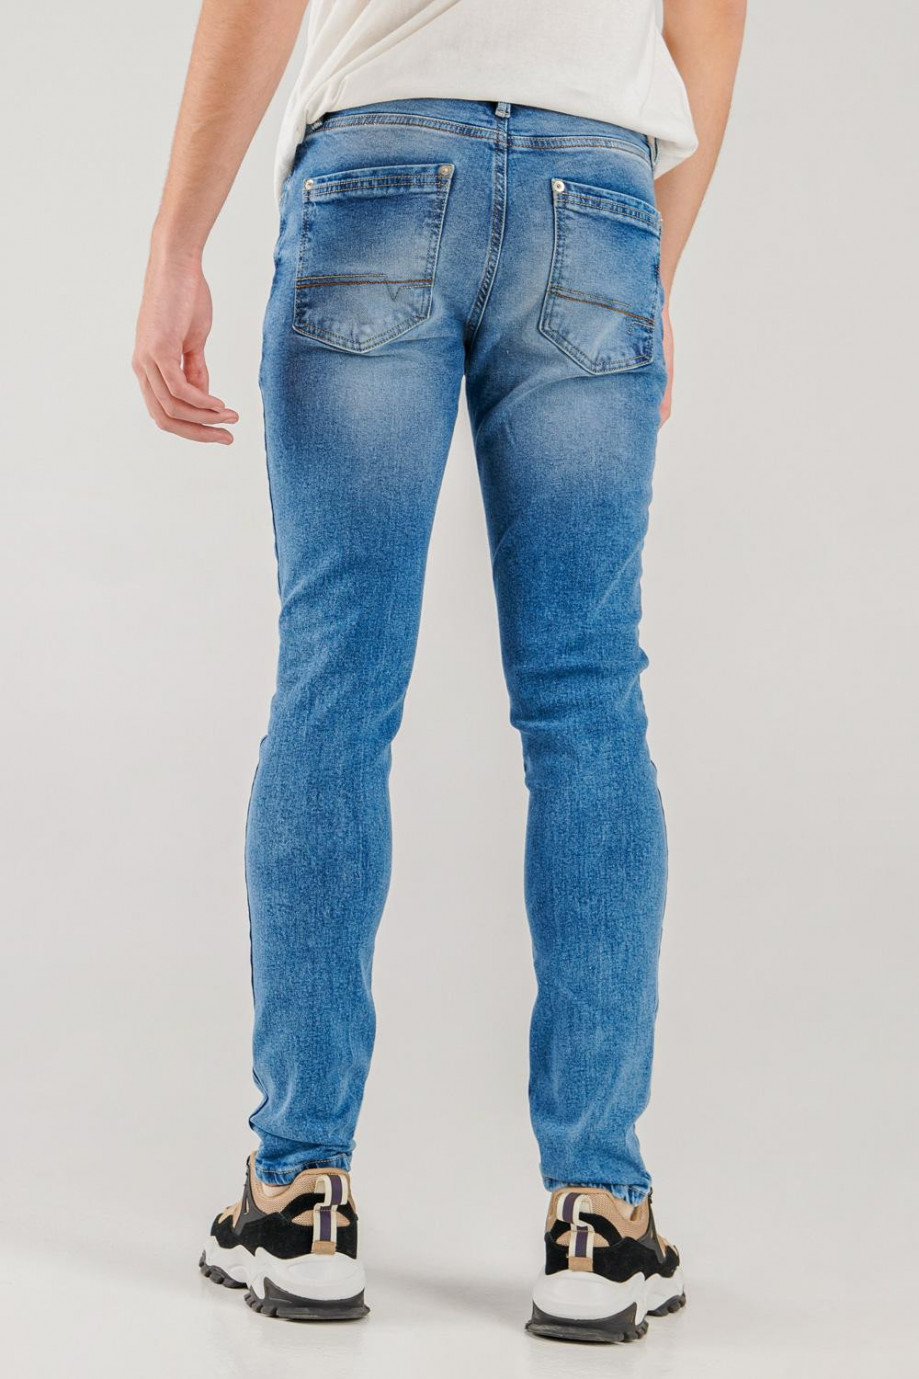 Jean skinny fit azul claro con 5 bolsillos y tiro bajo